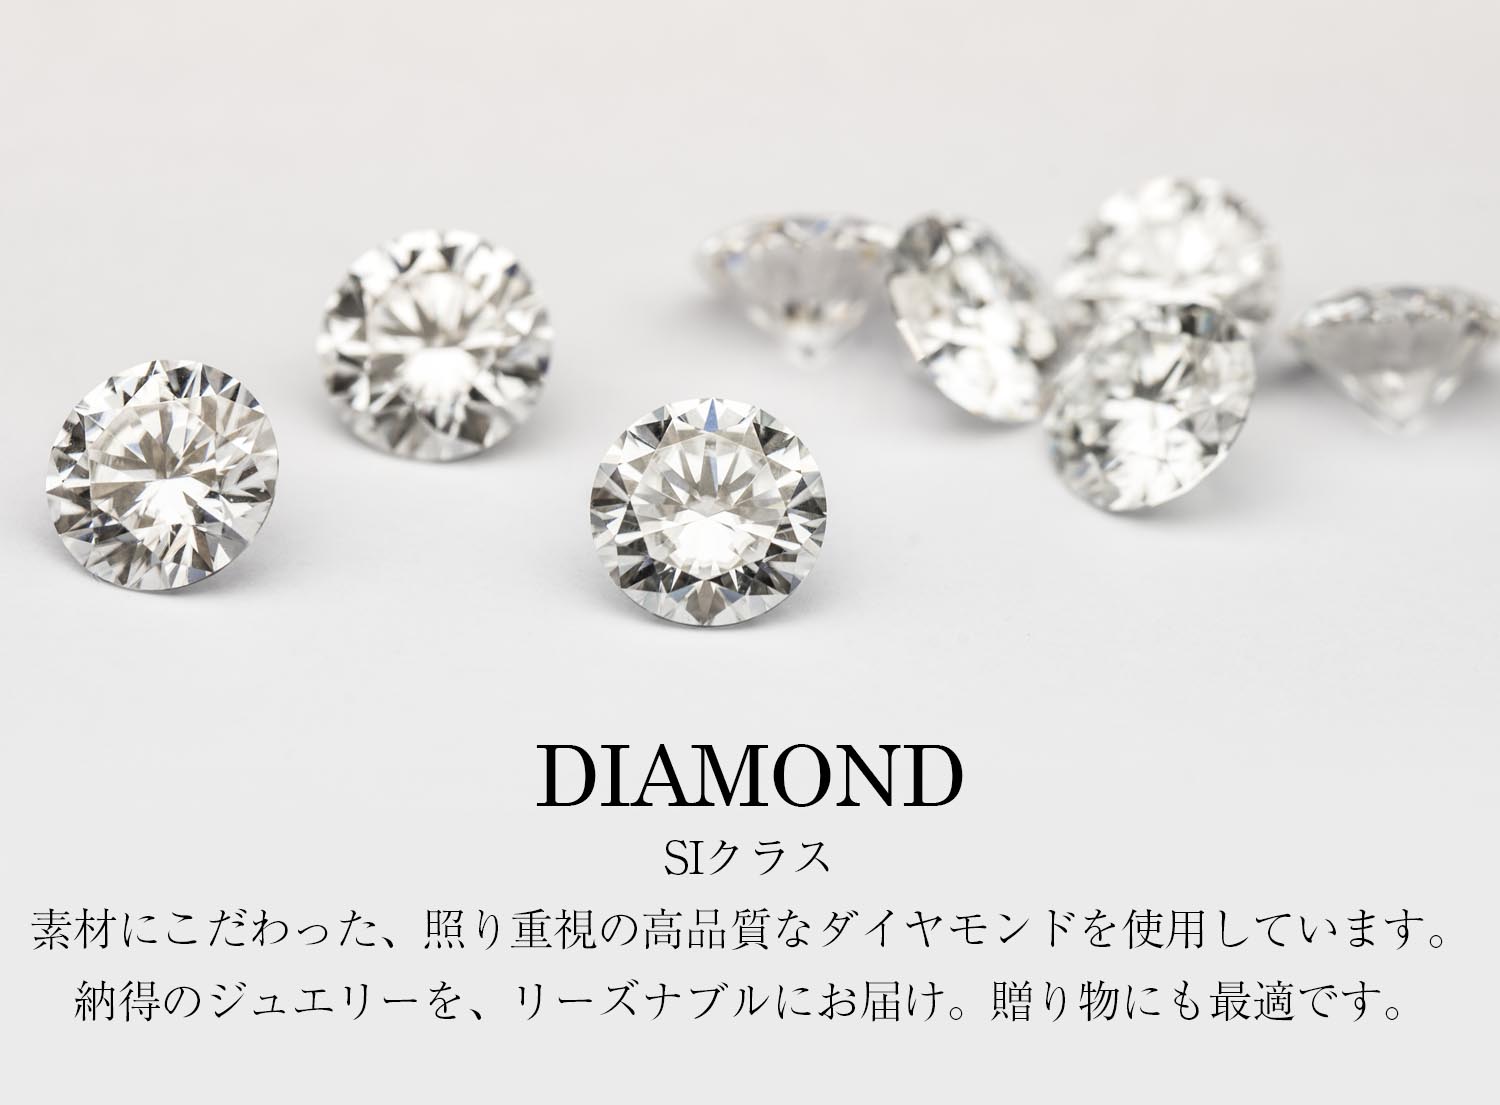 DIAMONDSIクラス素材にこだわった、照り重視の高品質なダイヤモンドを使用しています。 納得のジュエリーを、リーズナブルにお届け。贈り物にも最適です。